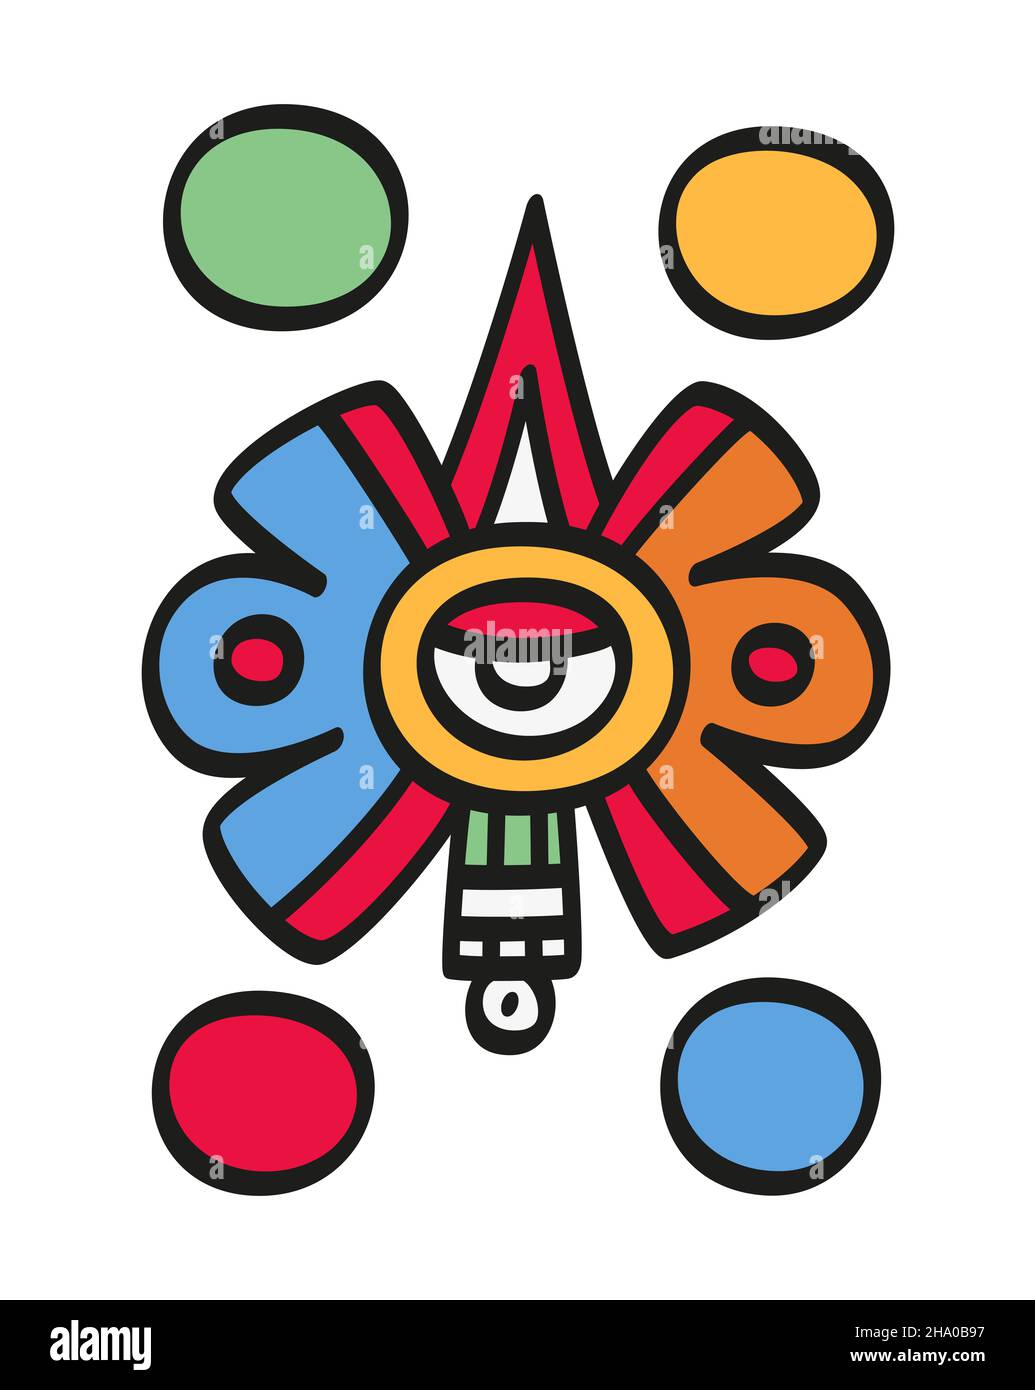 Nahui Ollin, fünftes Sonnensymbol in der aztekischen Kosmologie, mit einem Auge in der Mitte, einem Sonnenstrahl und einem Edelstein, der aus dem Auge hervorgeht. Stockfoto